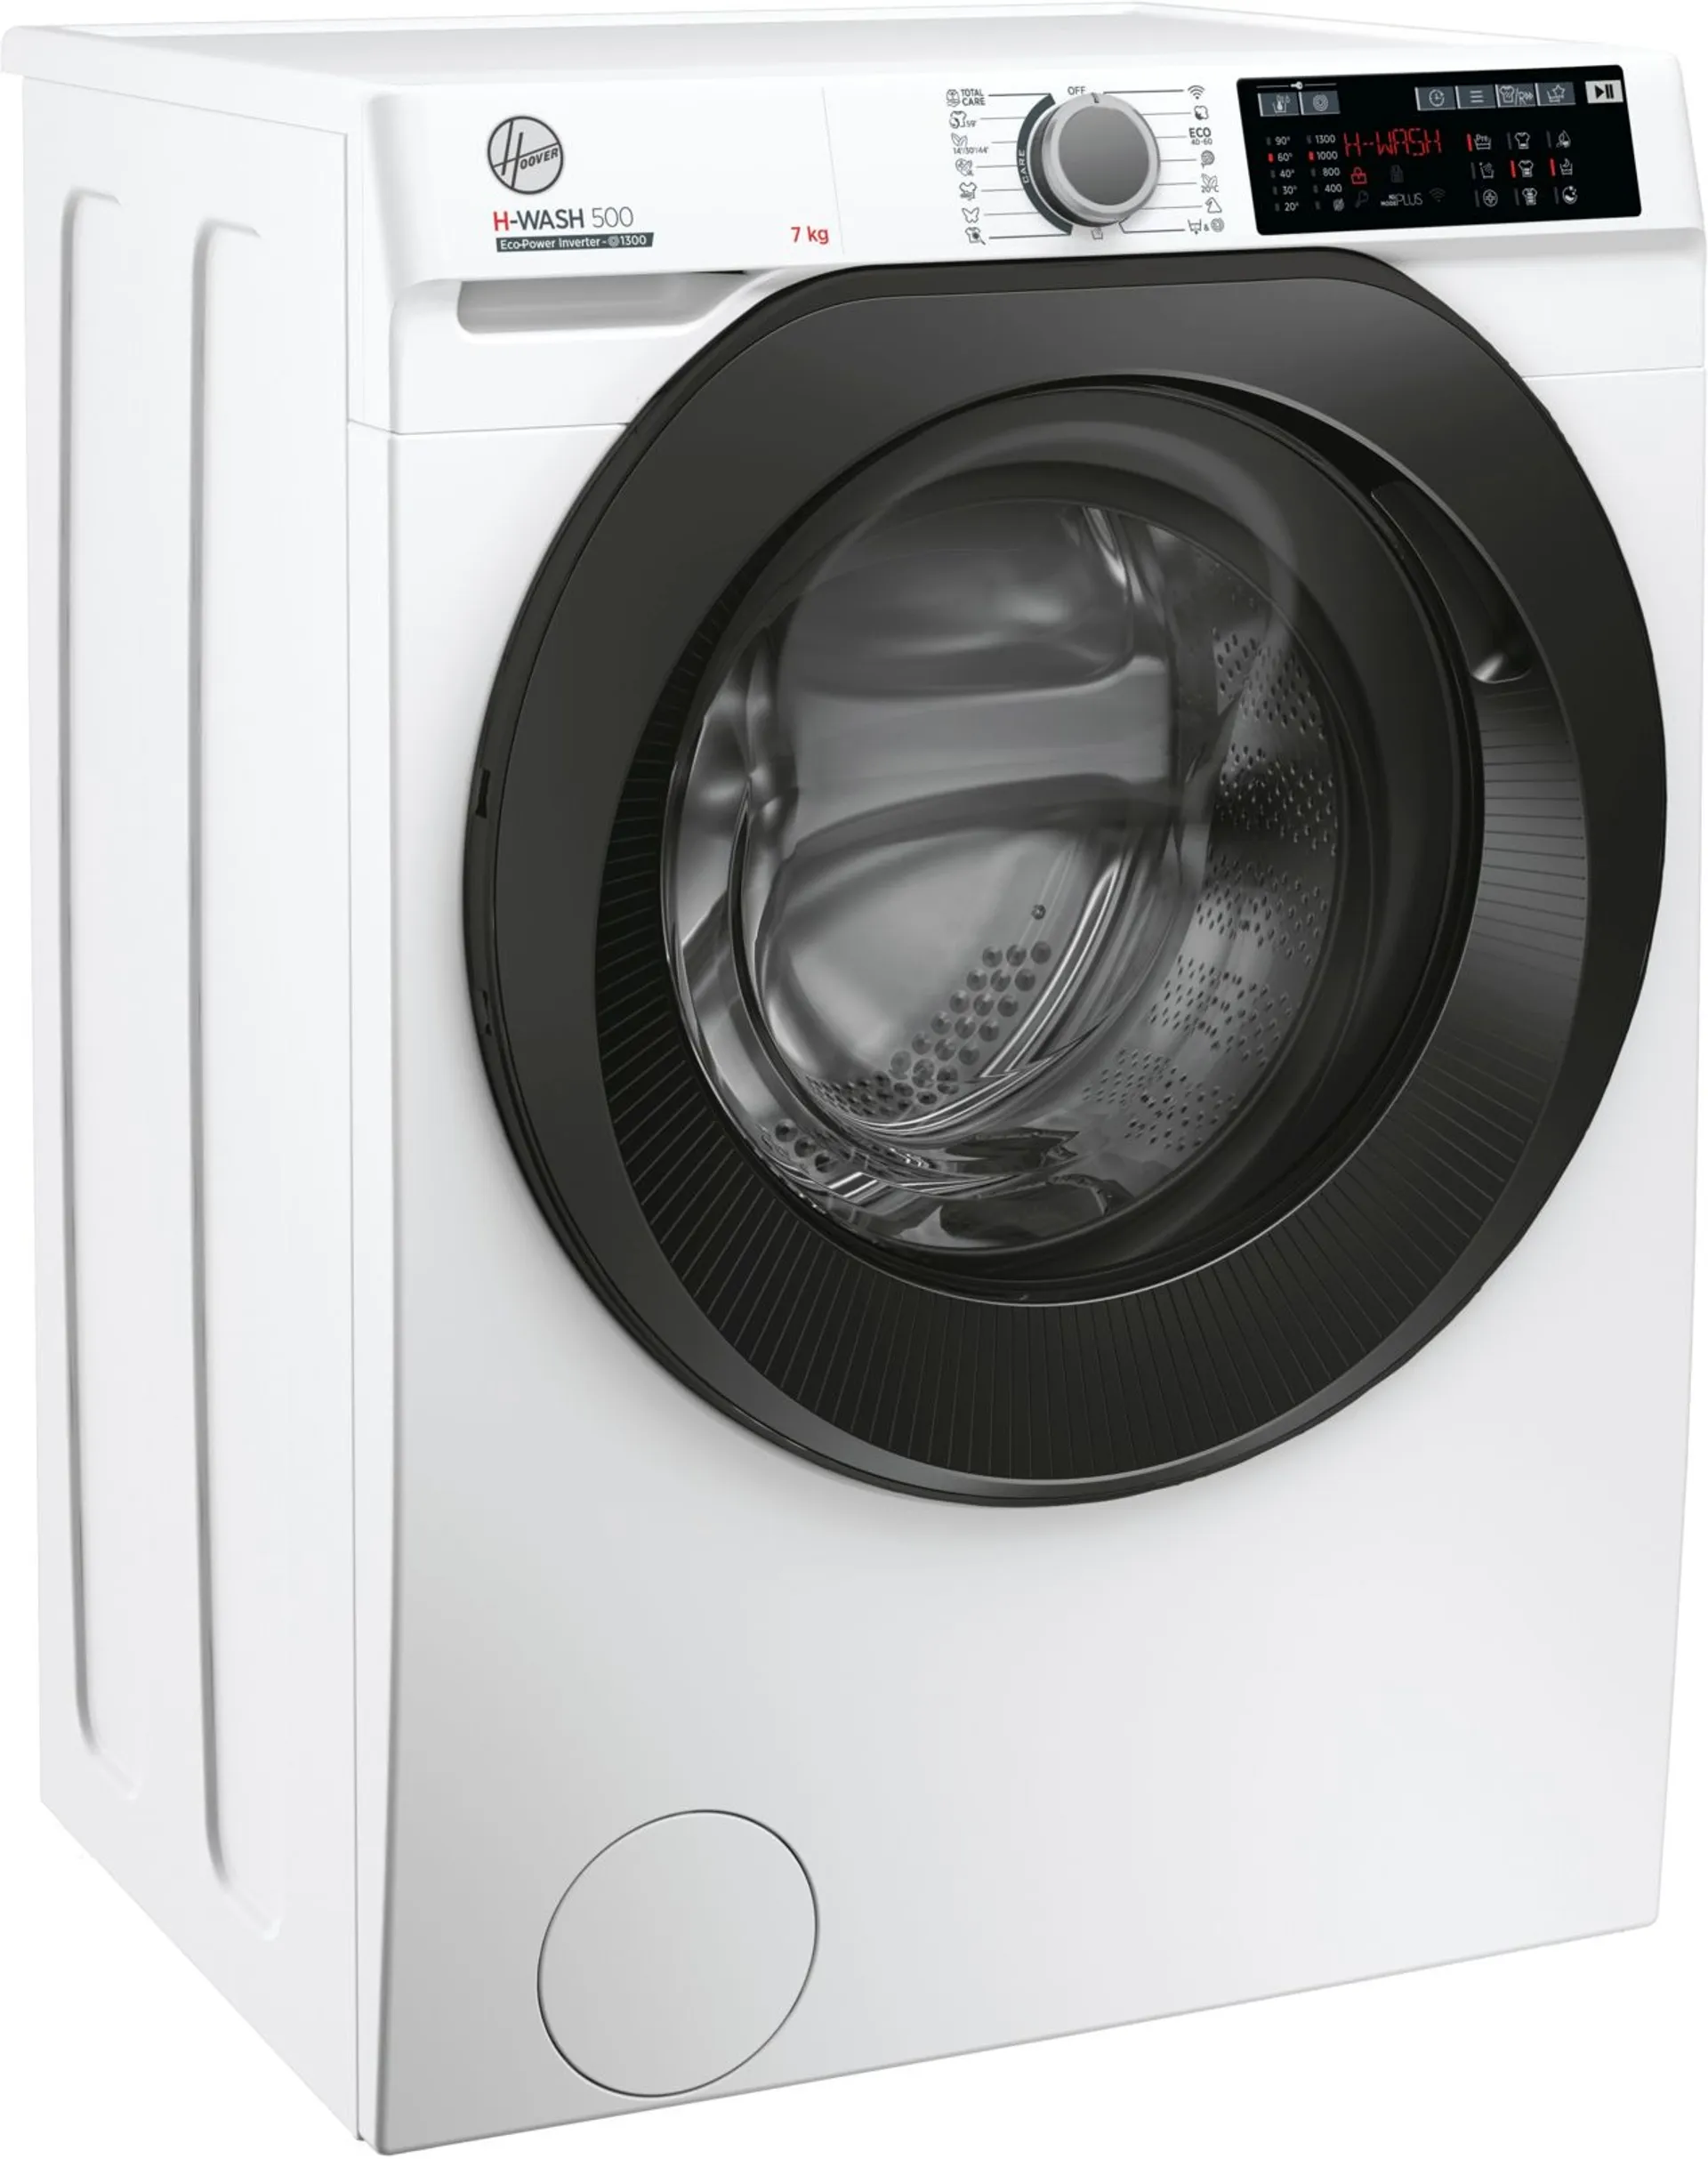 Hoover edestä täytettävä pyykinpesukone 7kg H-Wash 500 Slim HW4 37XMBB-1-S valkoinen - 3